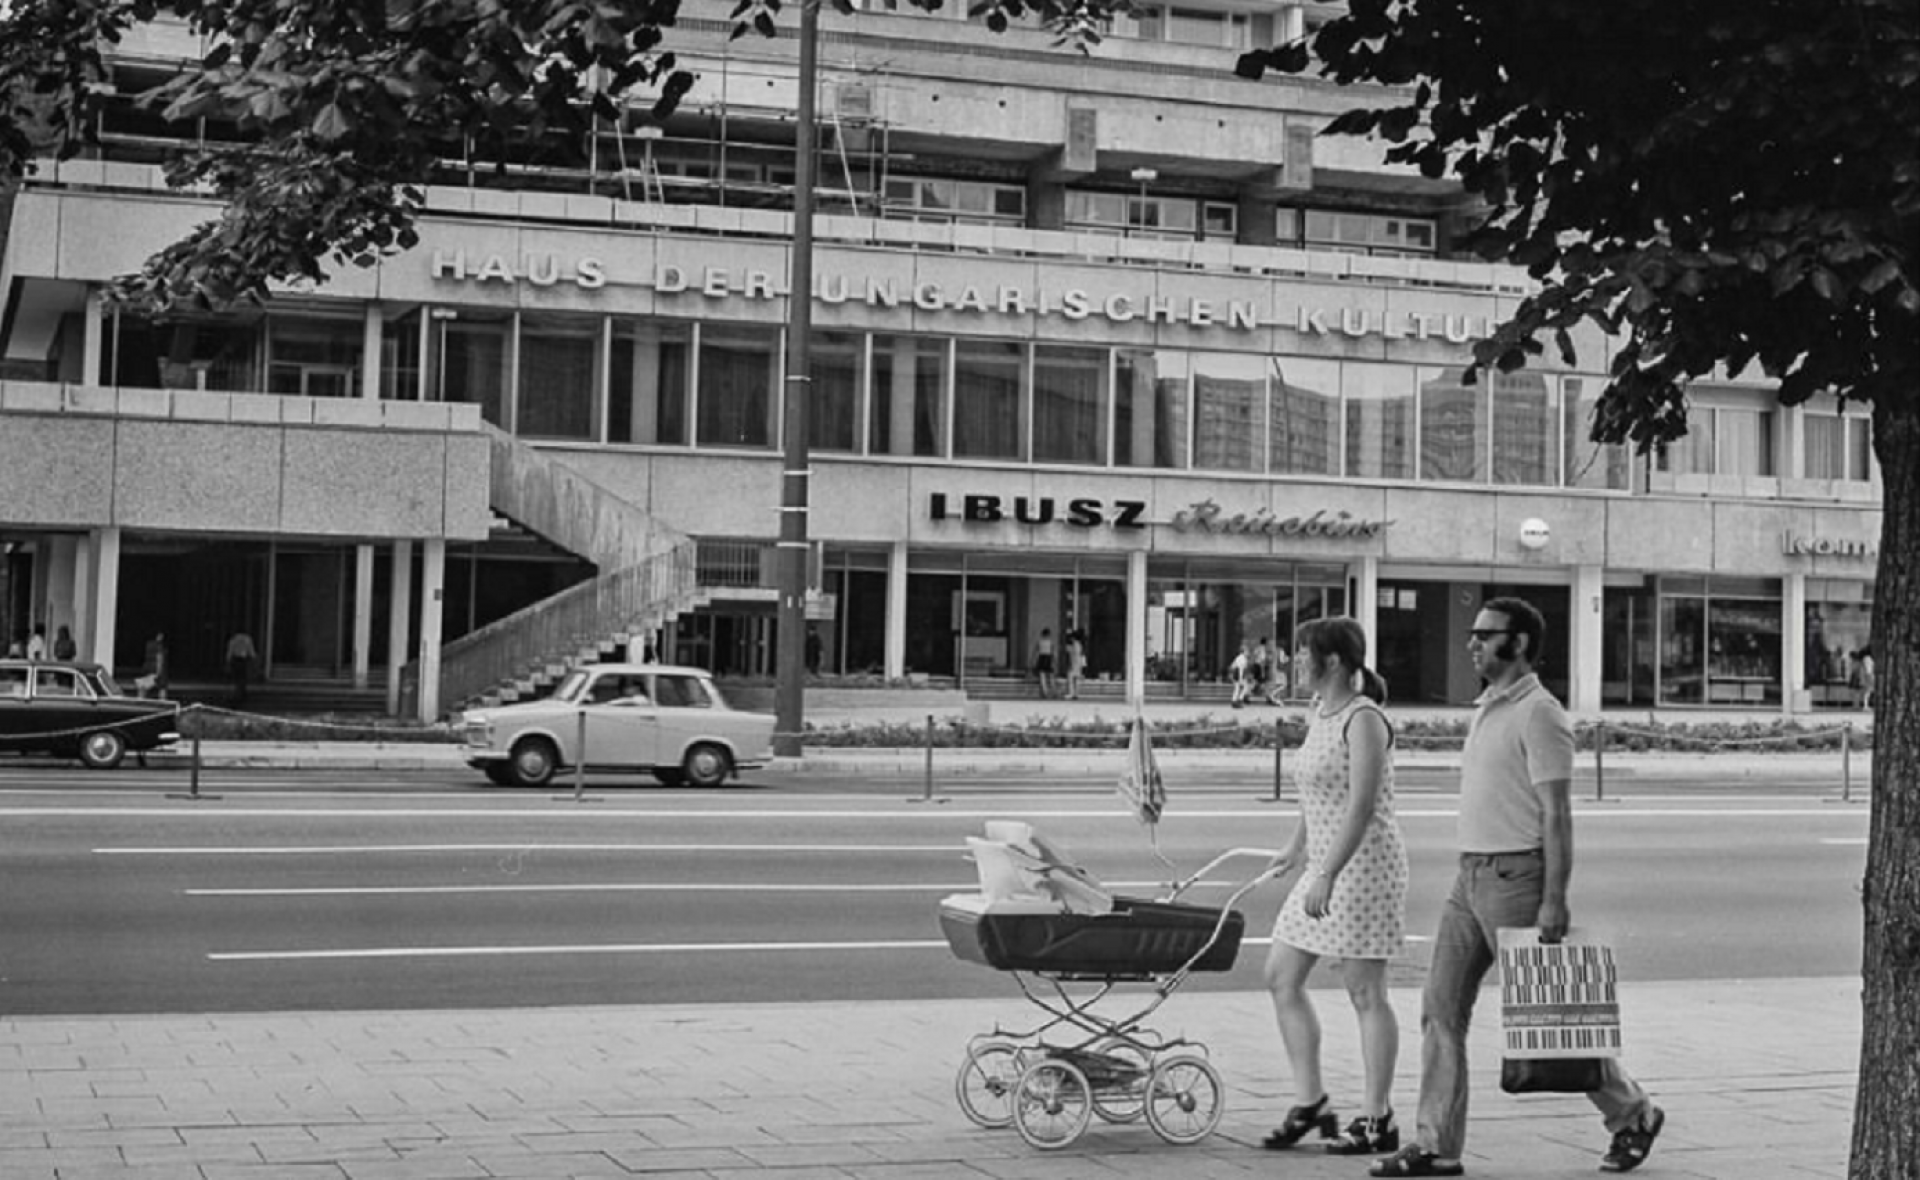 Straßenszene vor dem Haus der Ungarischen Kultur in Ost-Berlin, 1970er Jahre.